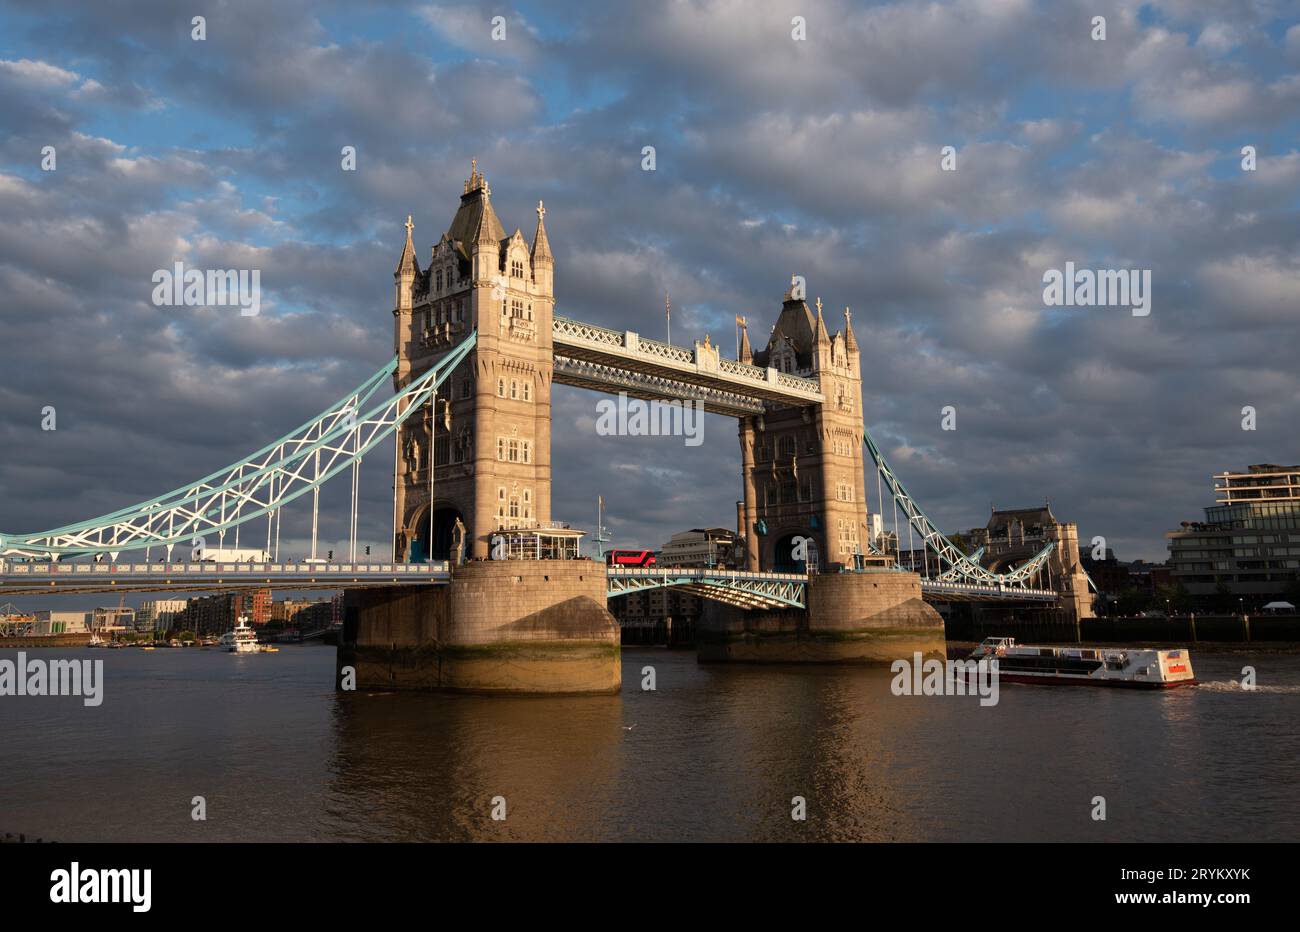 Pont de la tour de Londres. Bateau touristique naviguant sur la Tamise au coucher du soleil. Royaume-Uni Angleterre Banque D'Images